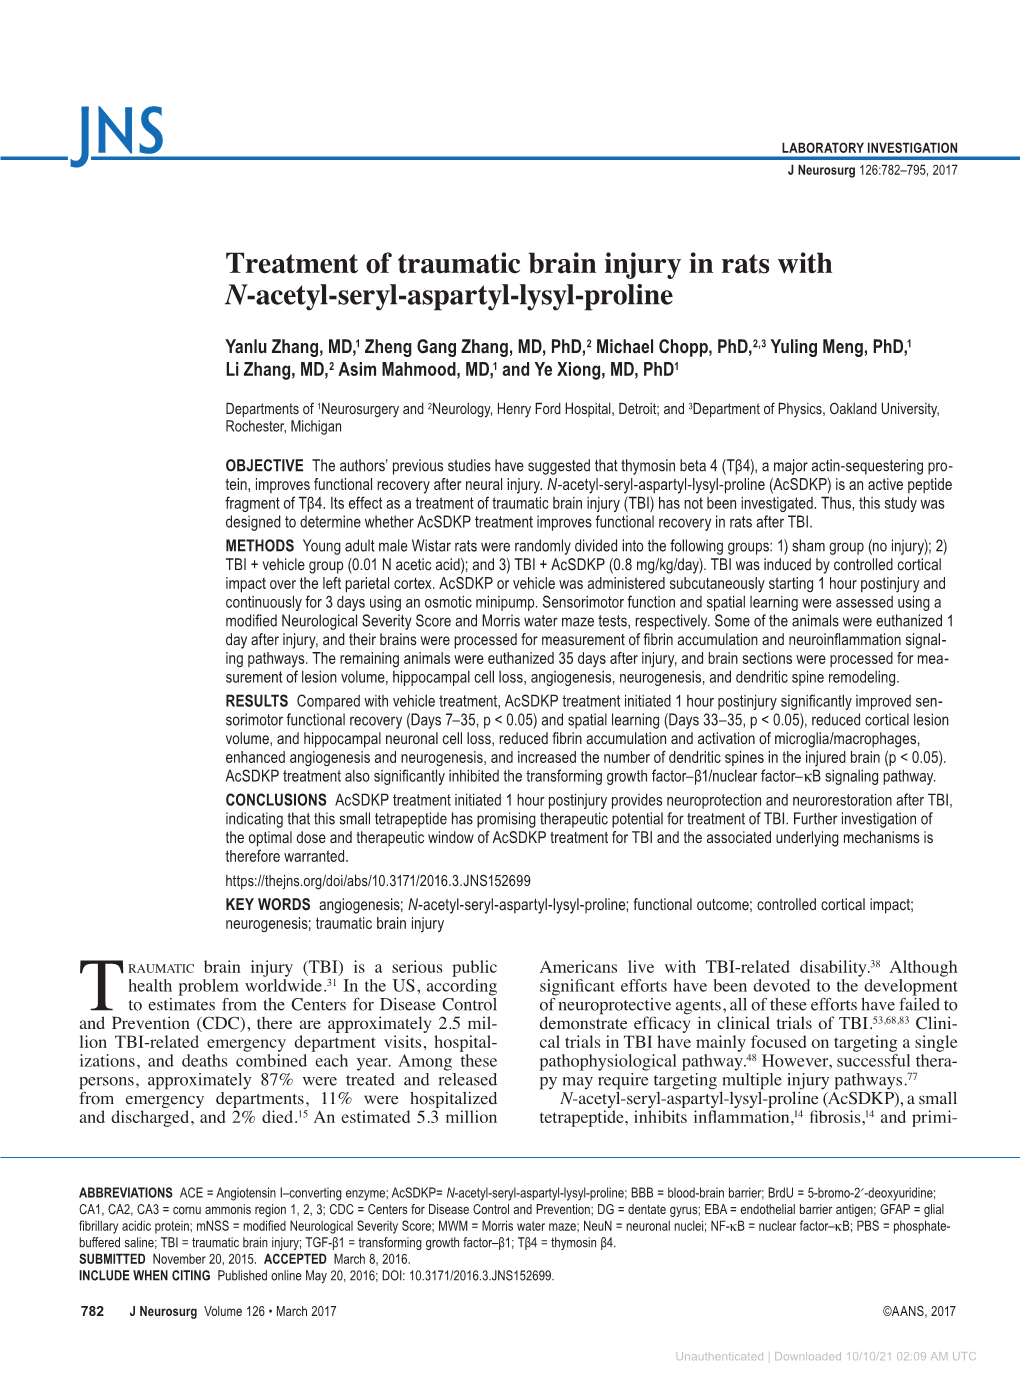 Treatment of Traumatic Brain Injury in Rats with N-Acetyl-Seryl-Aspartyl-Lysyl-Proline